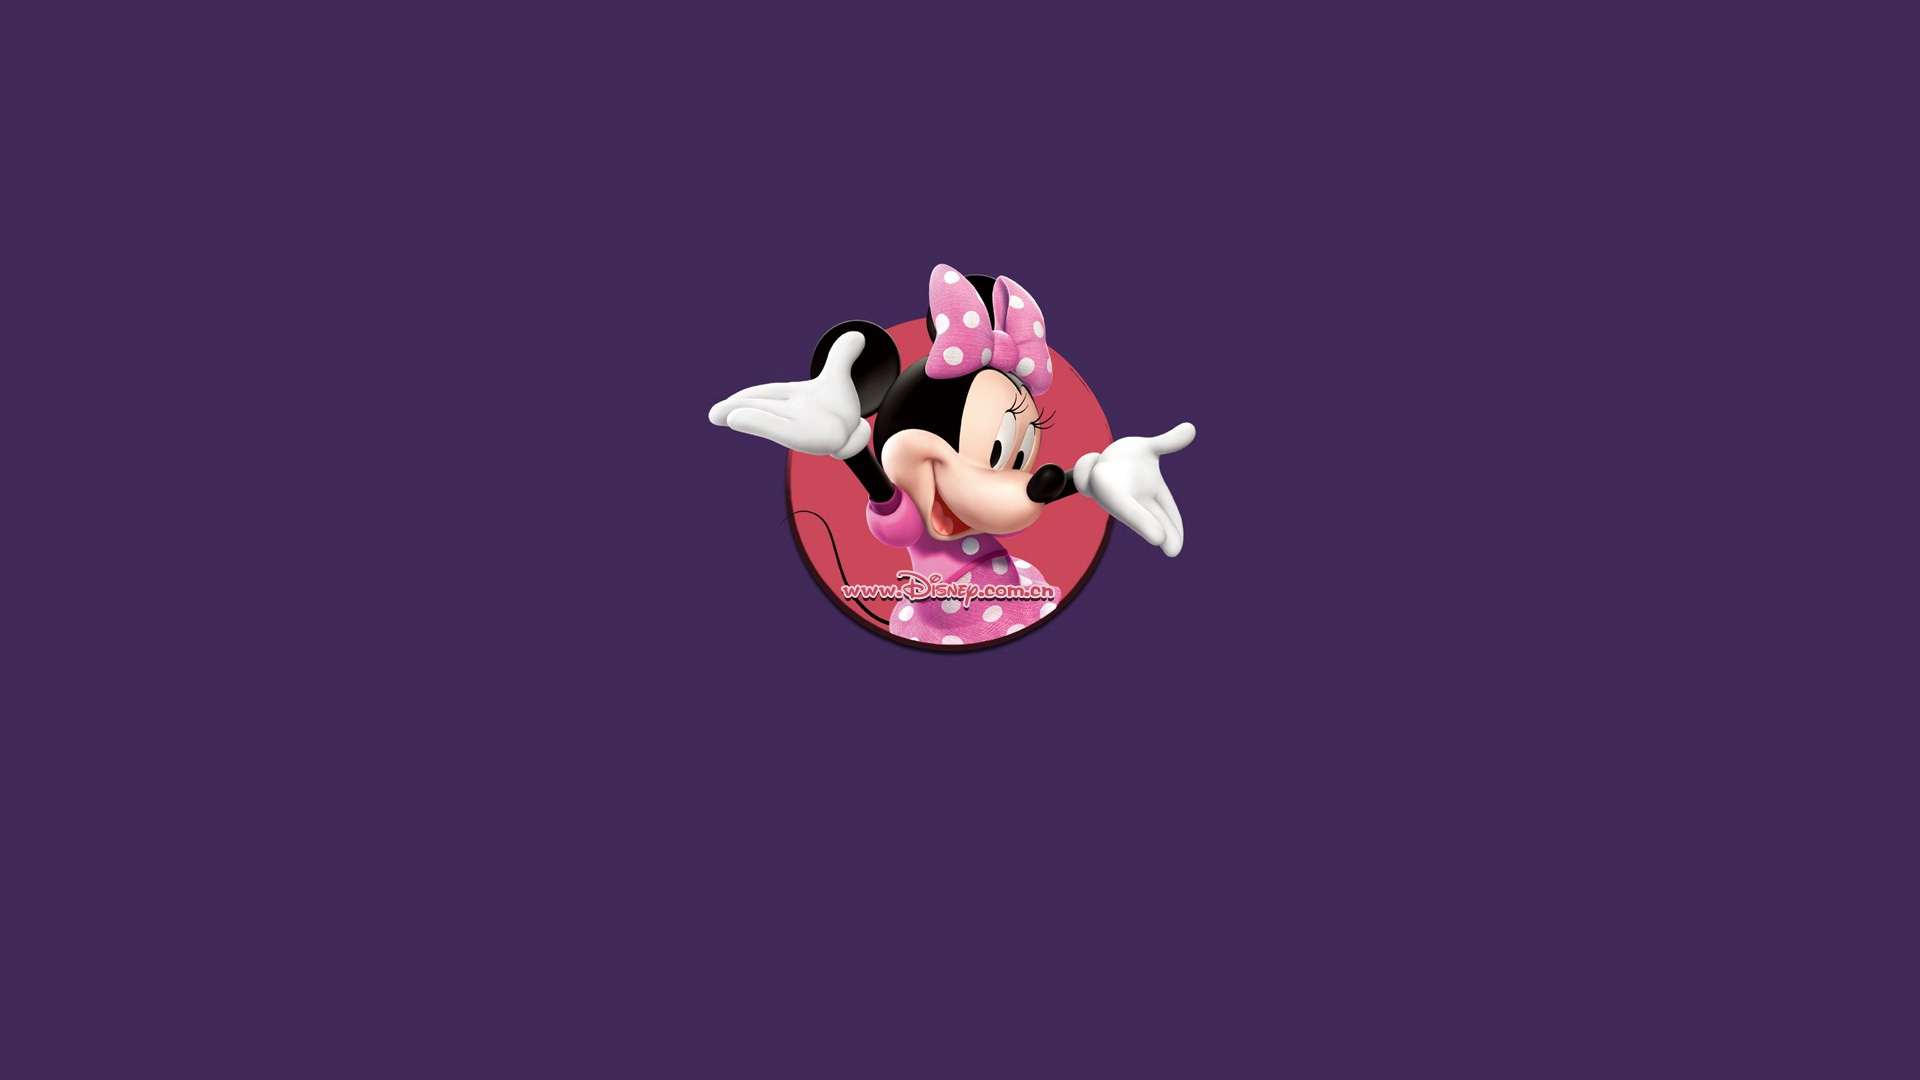 Free download Minnie Mouse Desktop [1920x1080] for your Desktop, Mobile & Tablet. Explore Minnie Mouse Wallpaper for iPad. Mickey And Minnie Mouse Wallpaper, Minnie Mouse Wallpaper for Desktop, Minnie